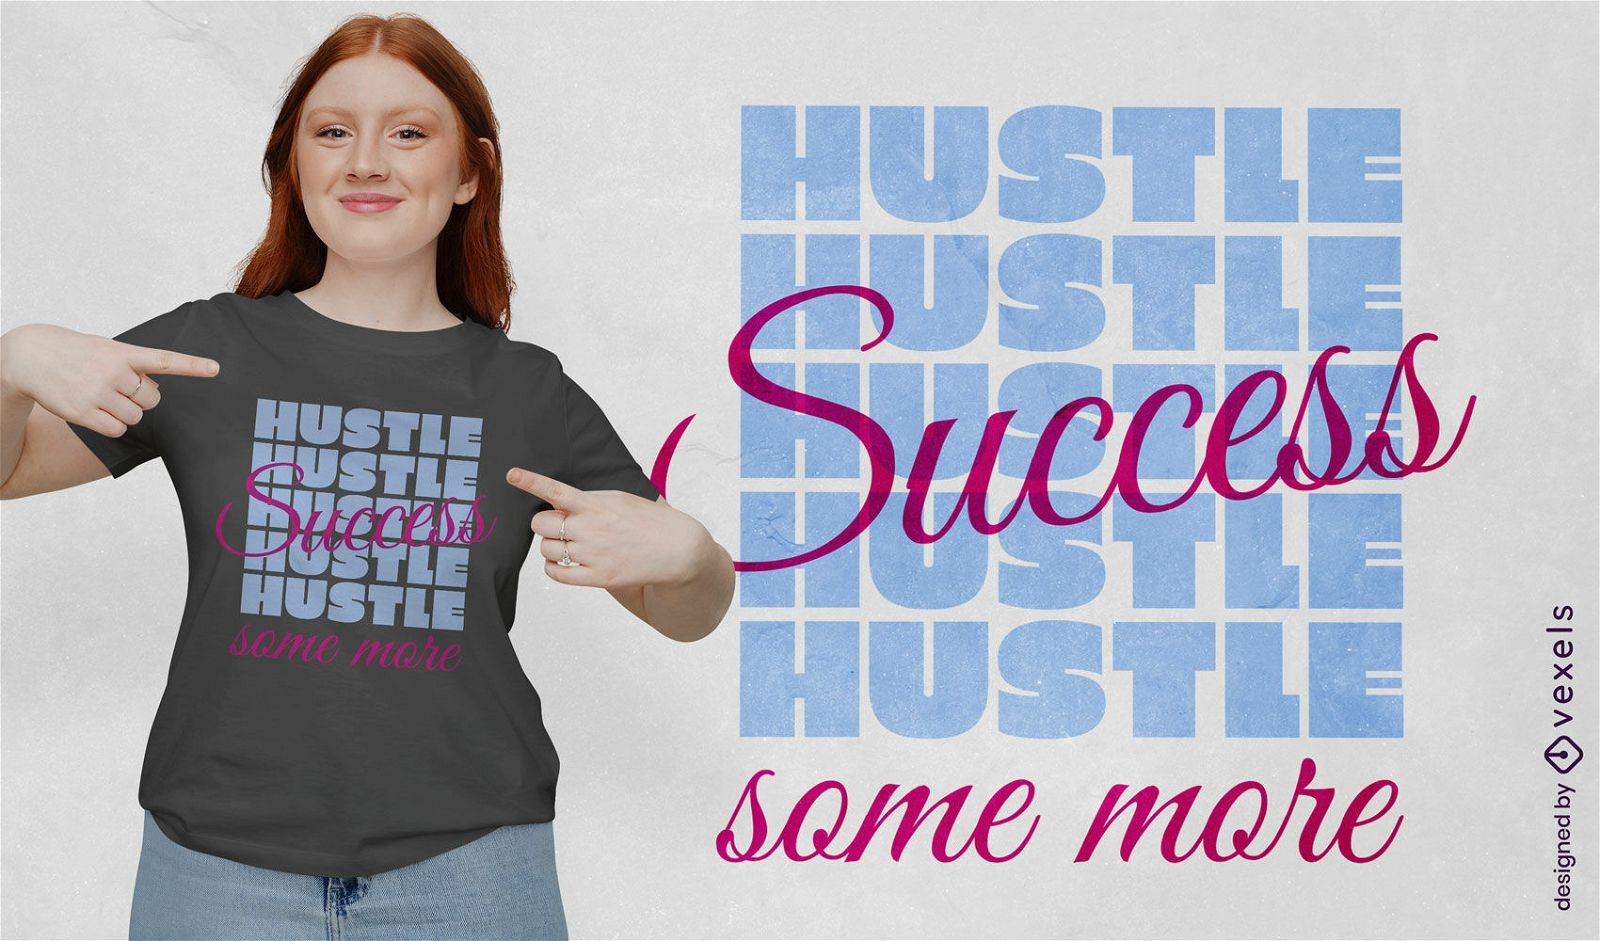 Success motivational quote t-shirt design